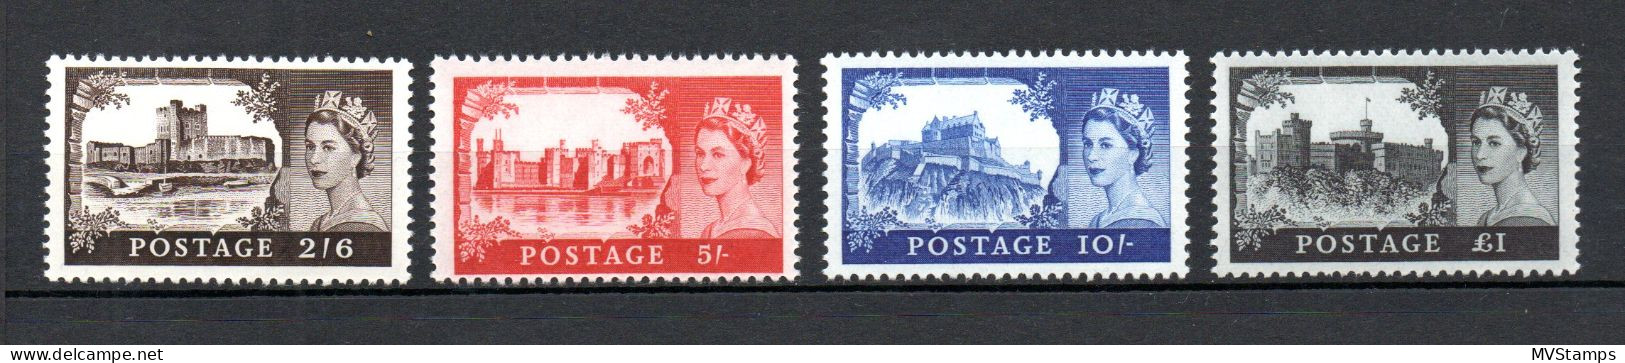 UK 1967 Set Definitive Castle Stamps (Michel 477/80) Nice MNH - Unused Stamps